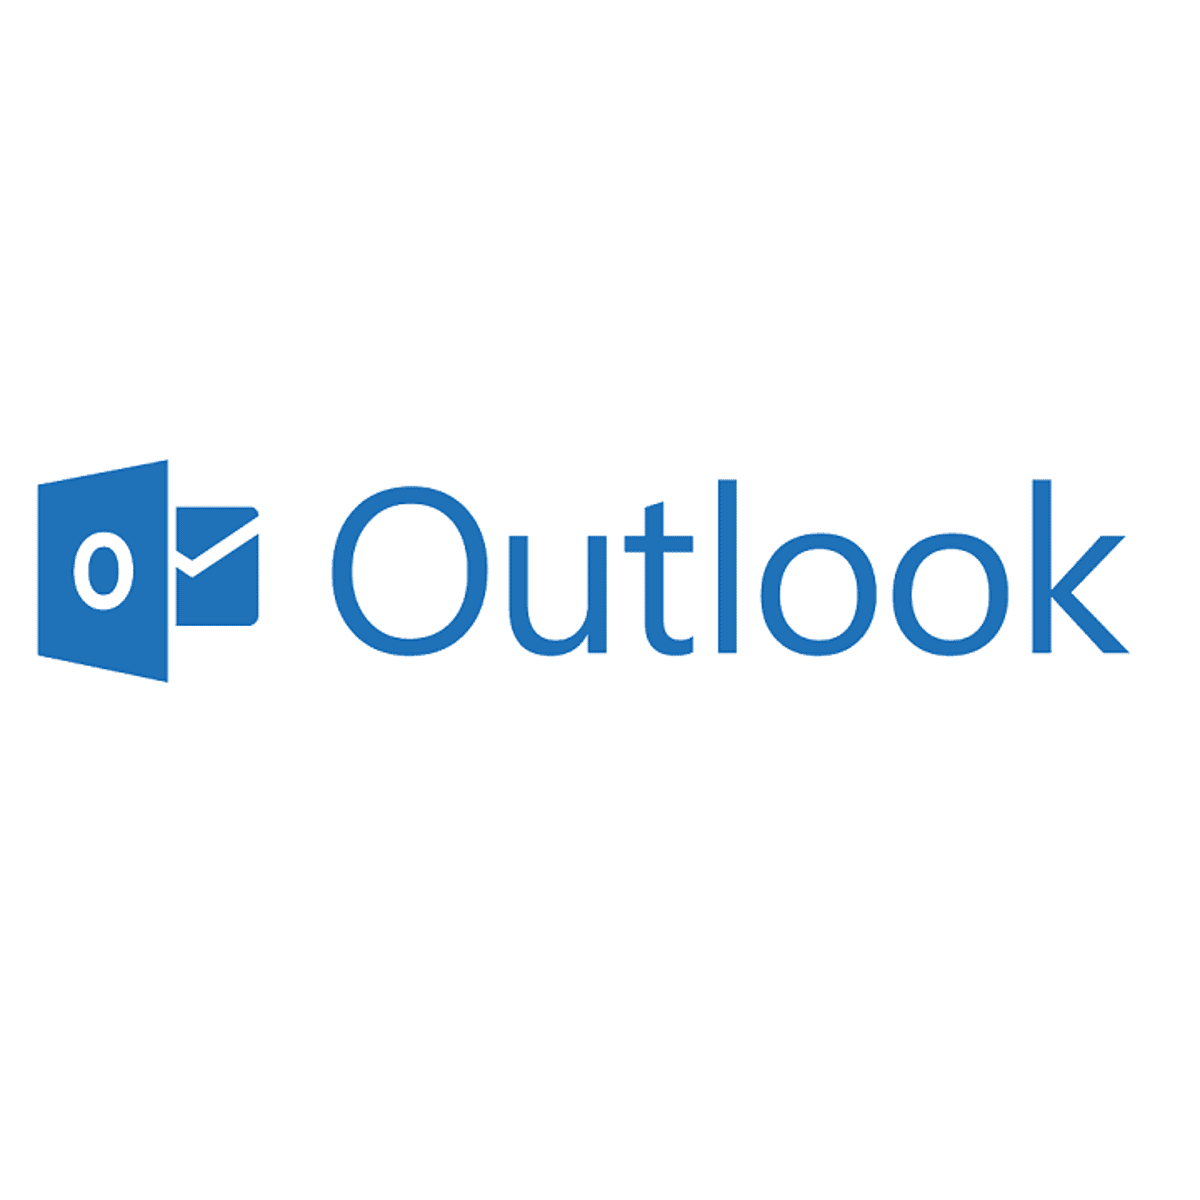 No se puede acceder fácilmente al archivo de Outlook debido a un error